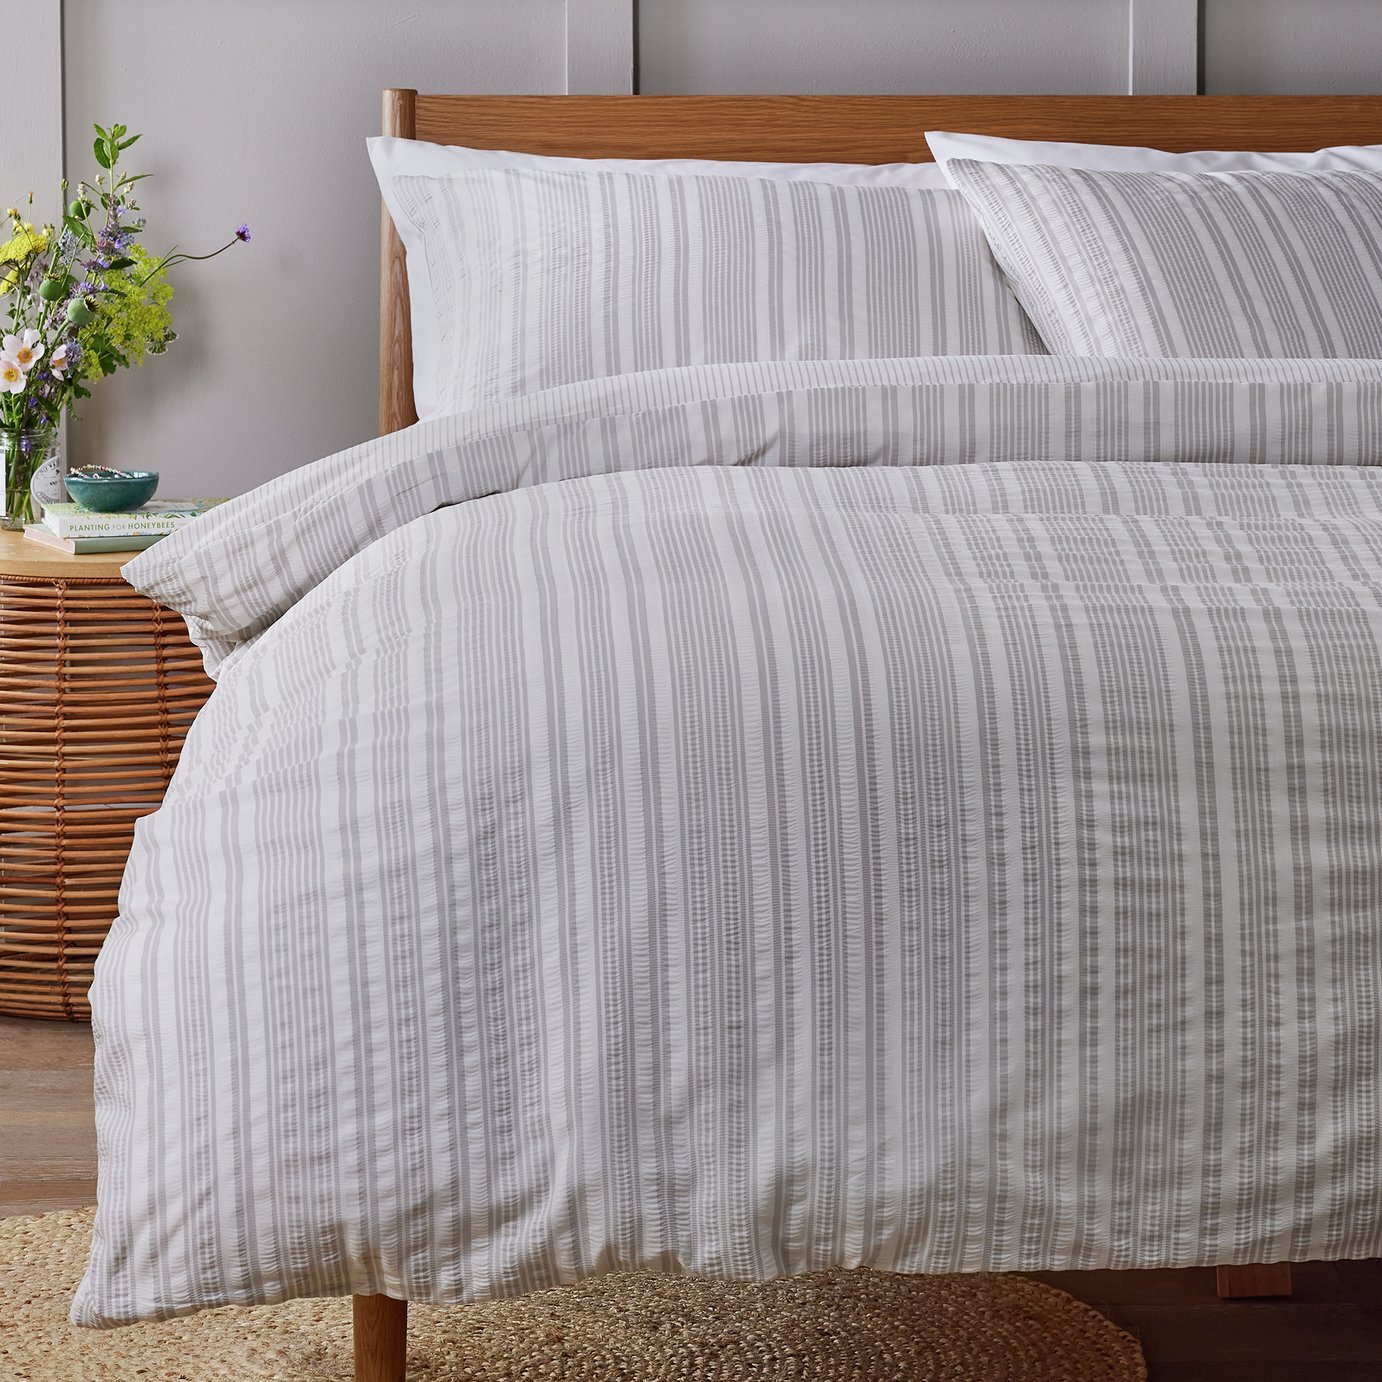 Argos Home Striped Seersucker Grey Bedding Set - Superking - image 1